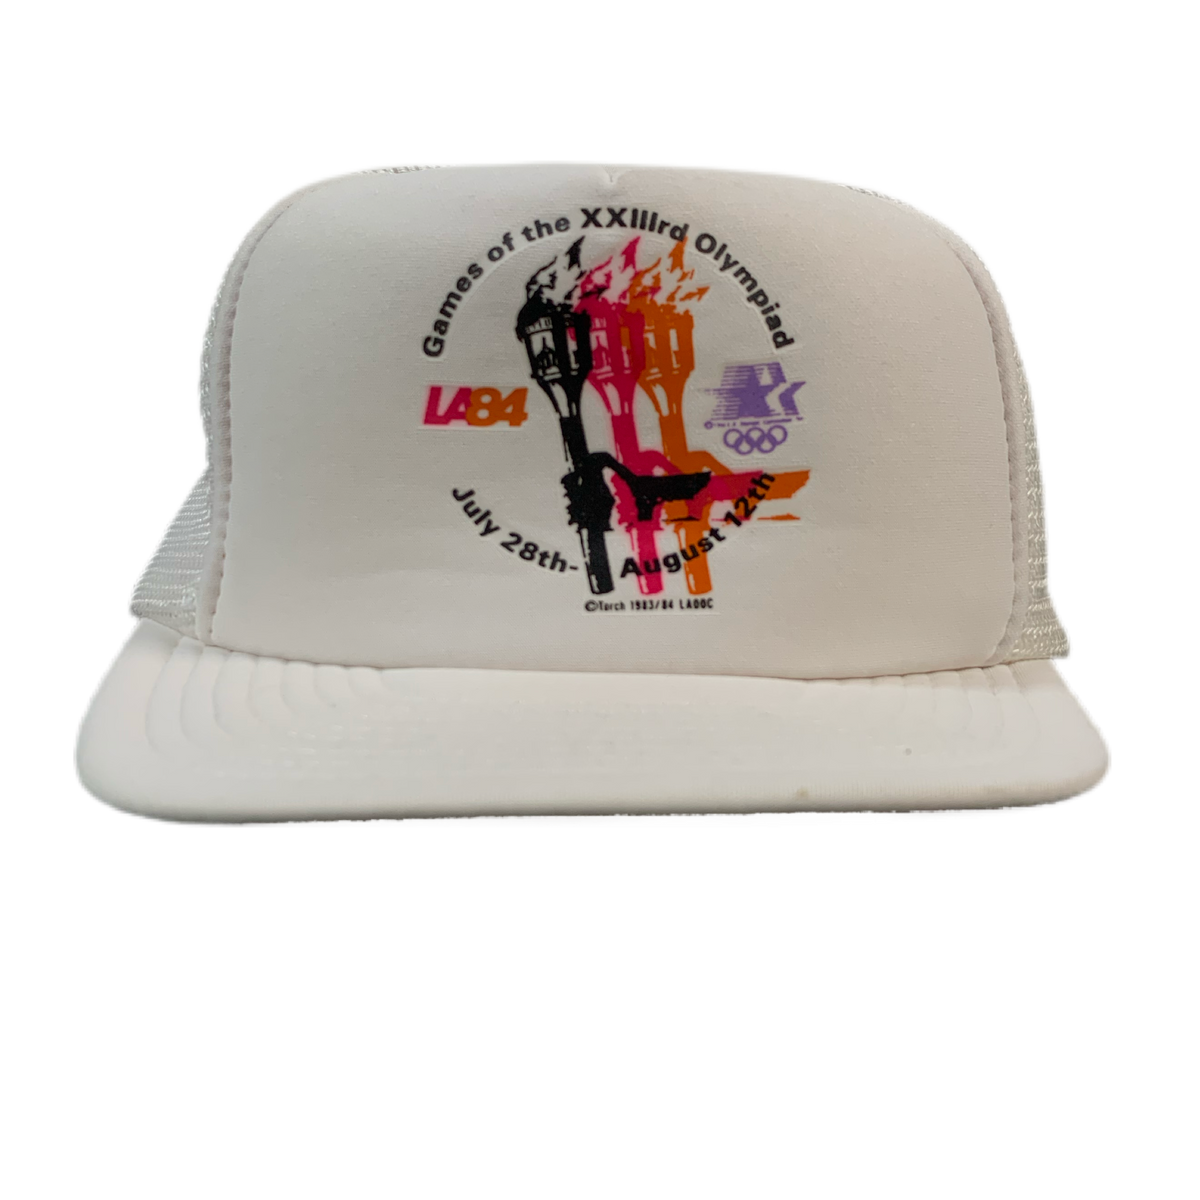 Vintage Los Angeles Olympics “1984” Hat